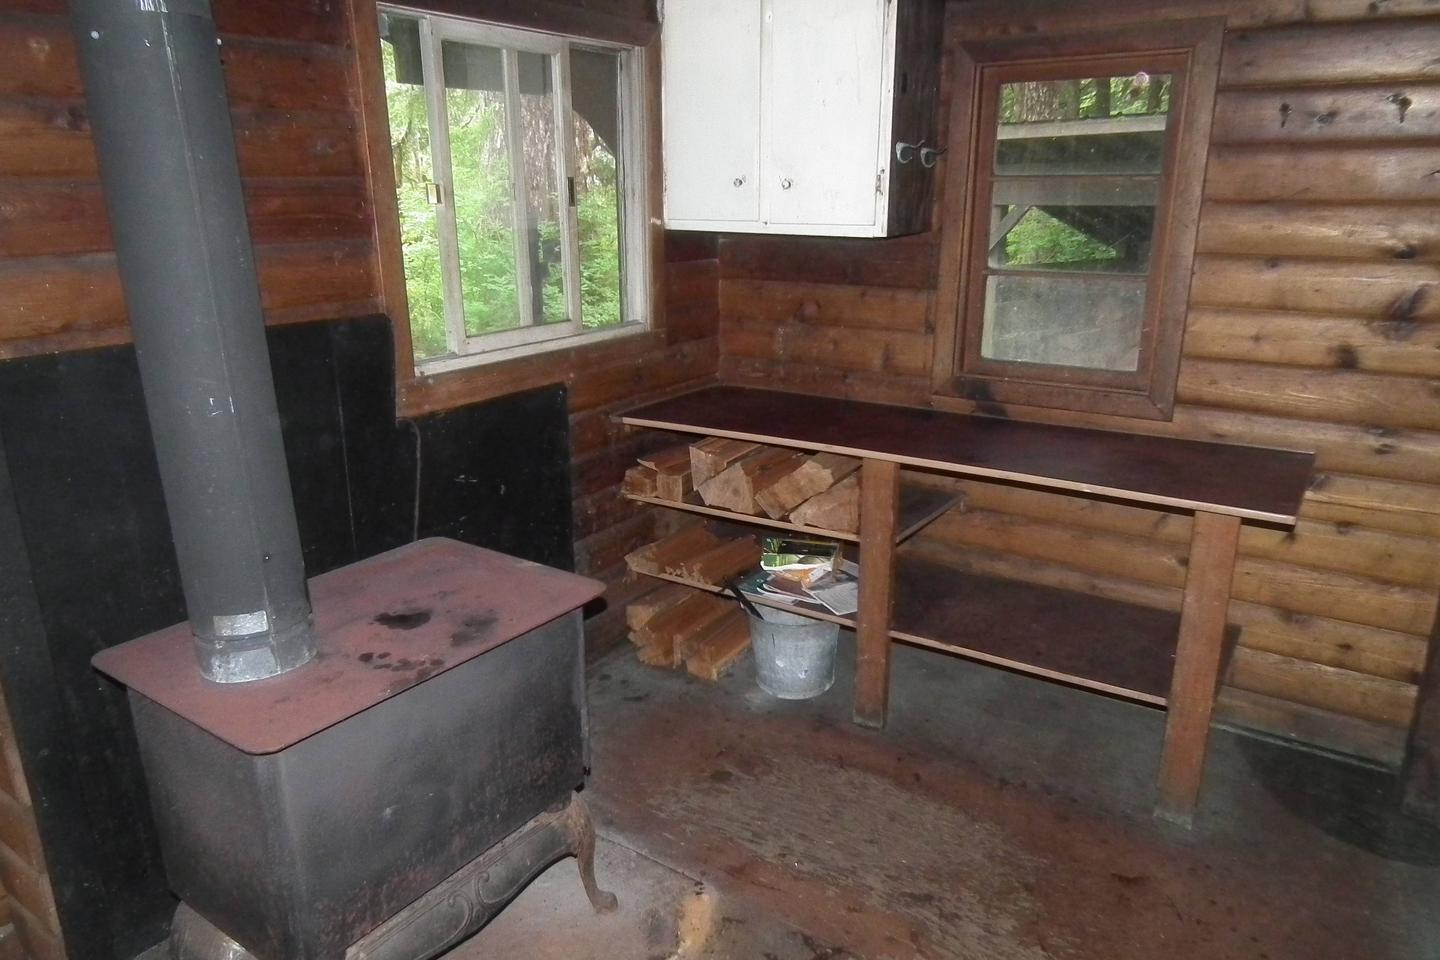 Kitchen and stoveKitchen area and stove.